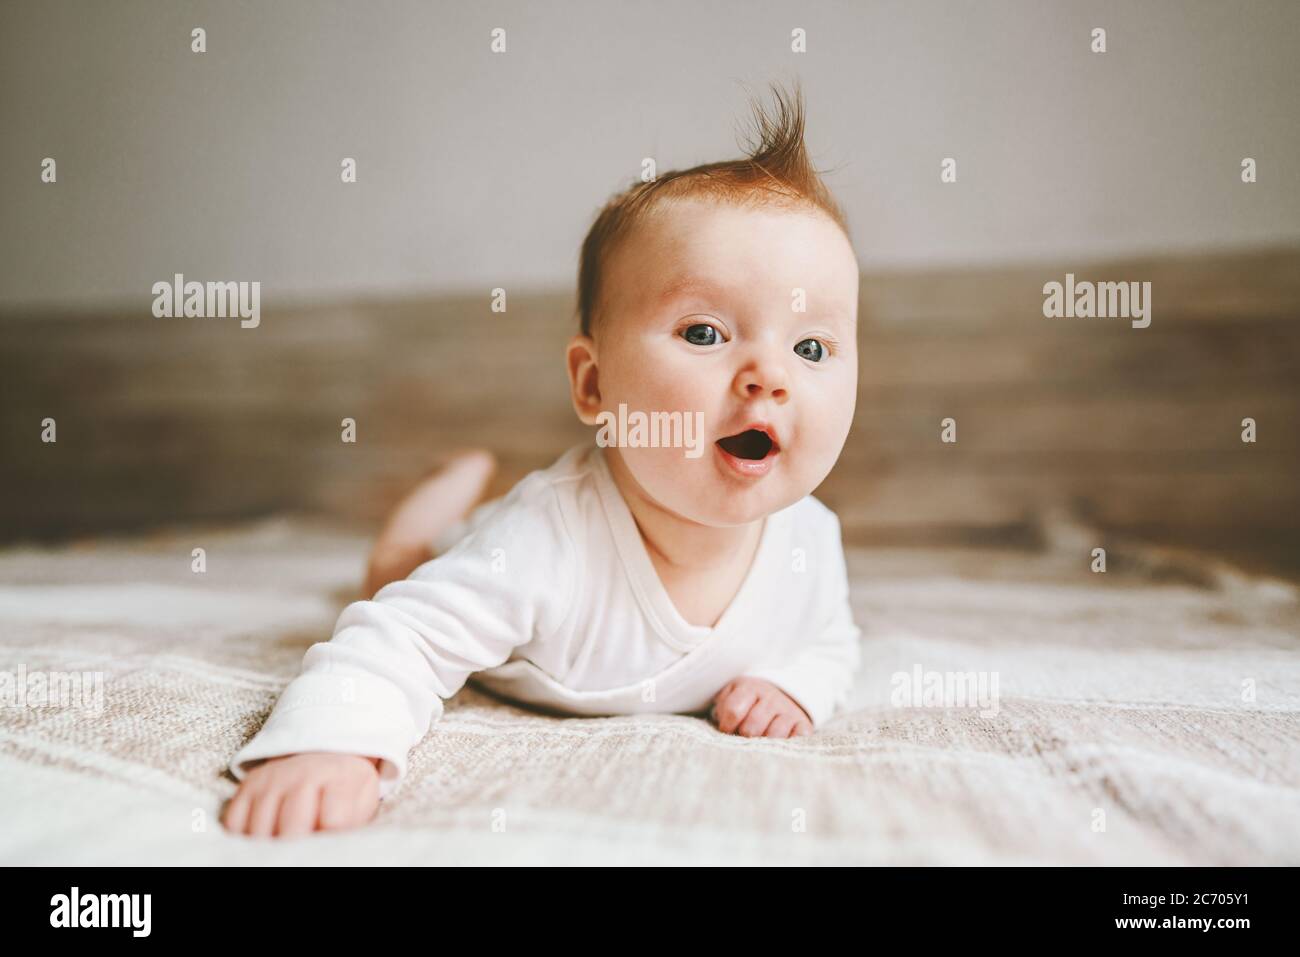 Bebé lindo bebé arrastrándose en casa niño curioso retrato estilo de vida familiar 3 meses niña niño Foto de stock